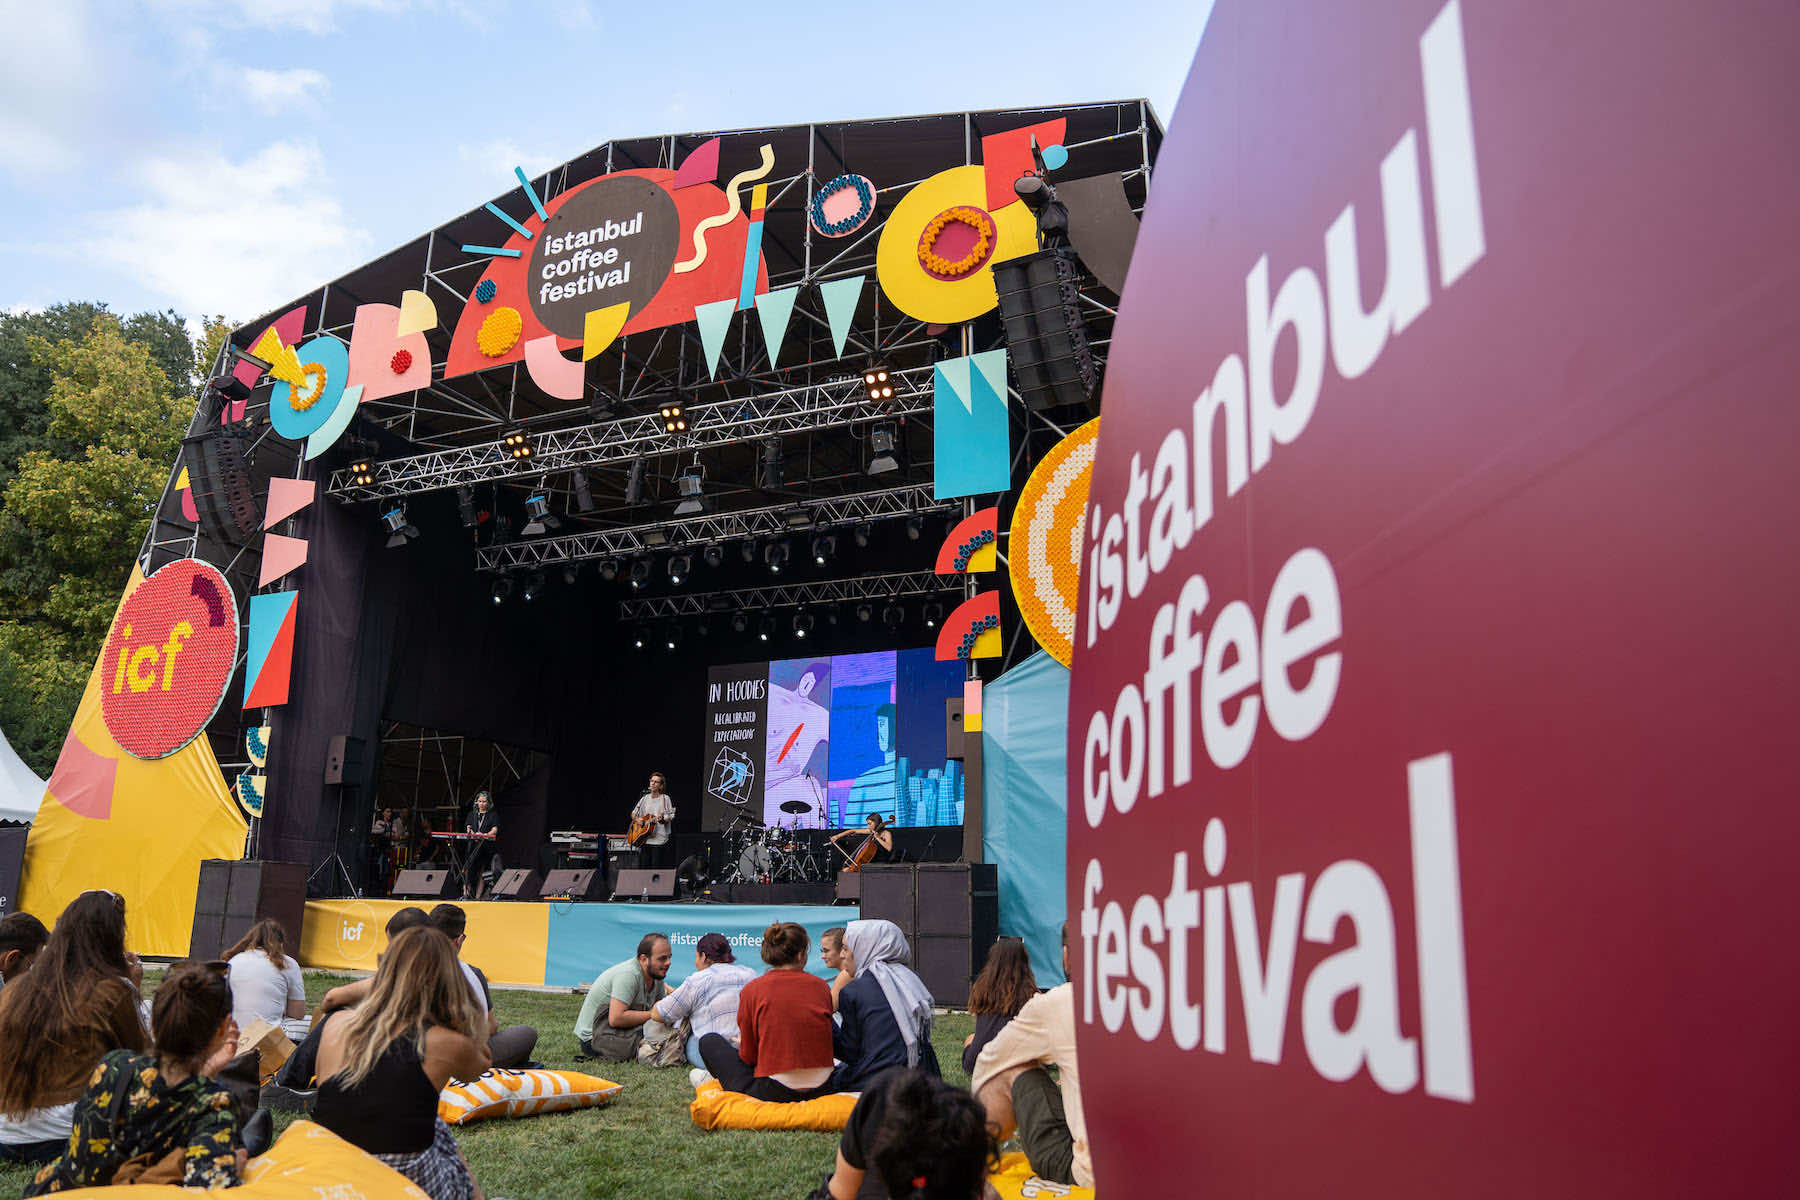 İstanbul Coffee Festival